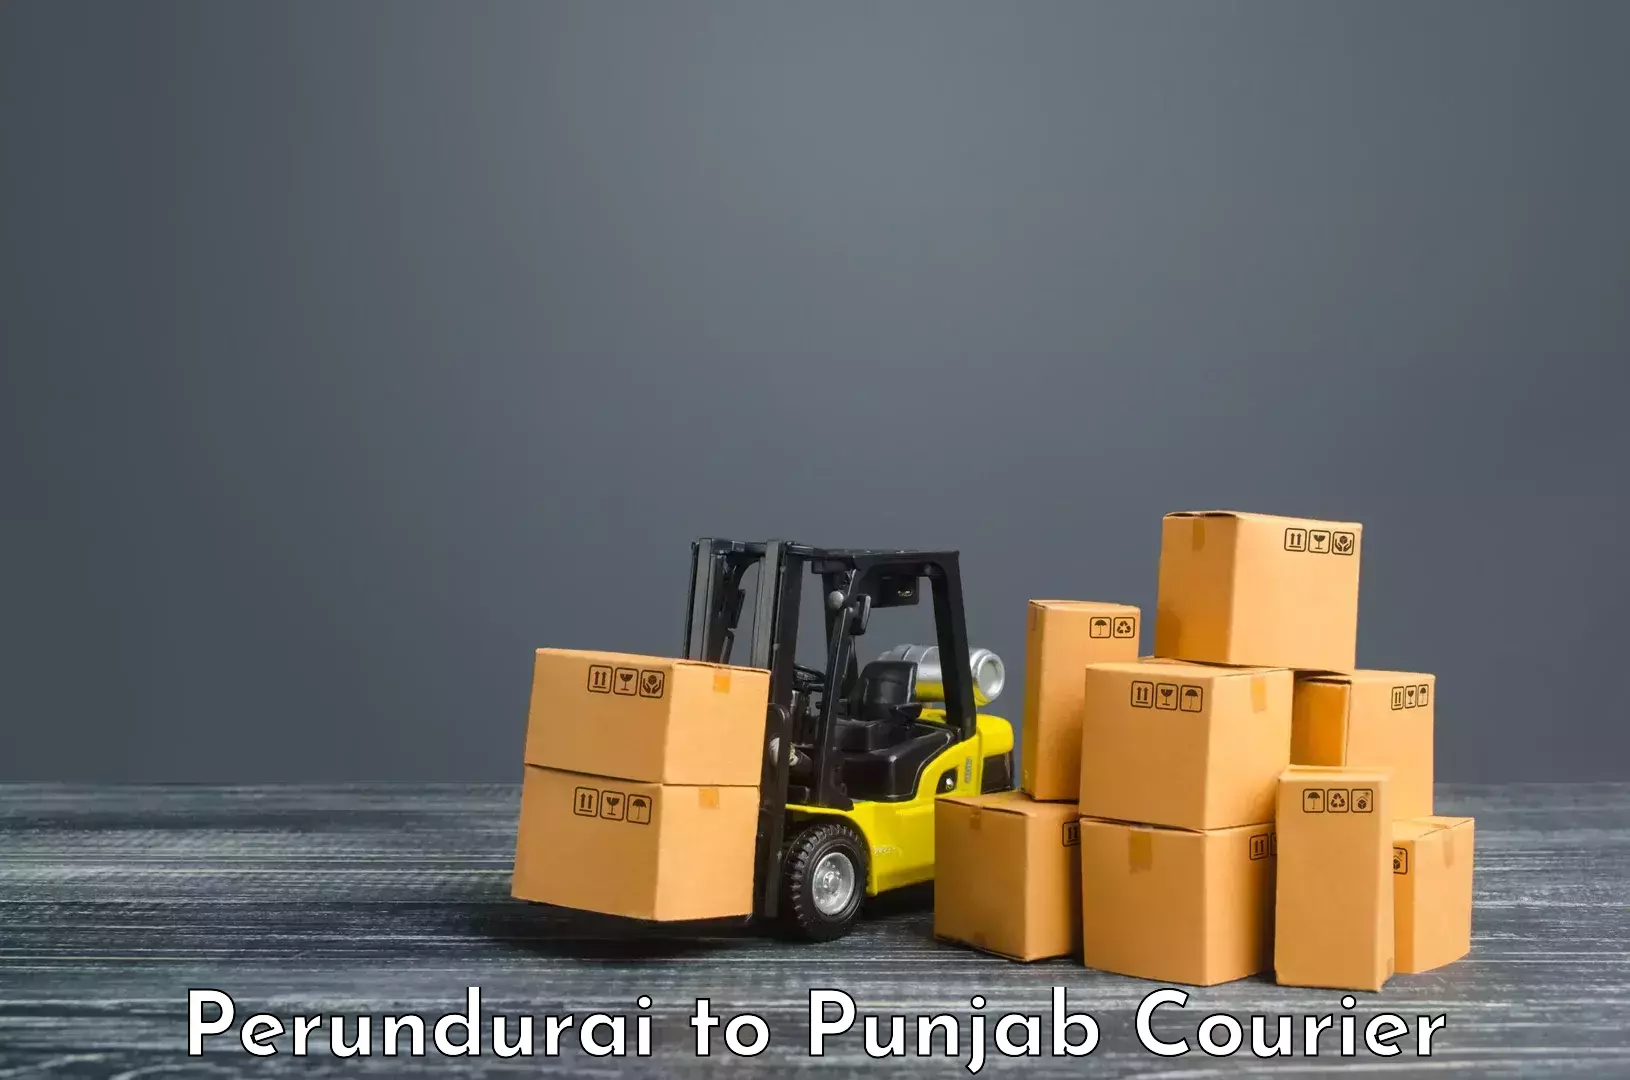 Comprehensive shipping network Perundurai to Dasuya